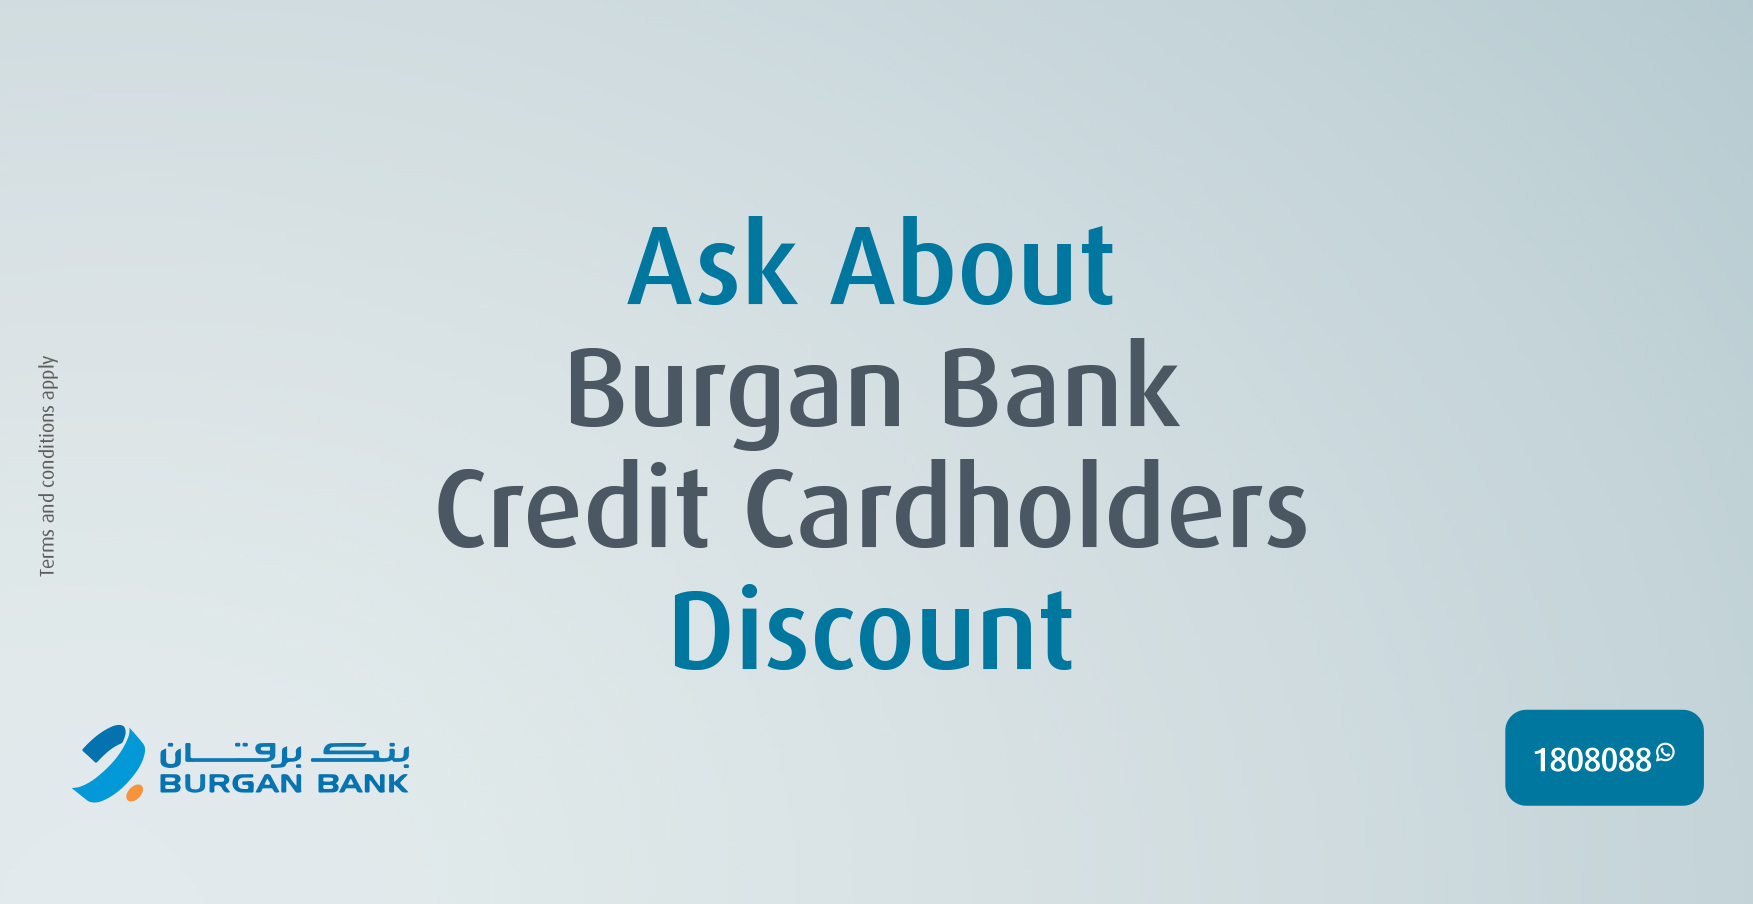 Burgan Bank Credit Cardholders Discount